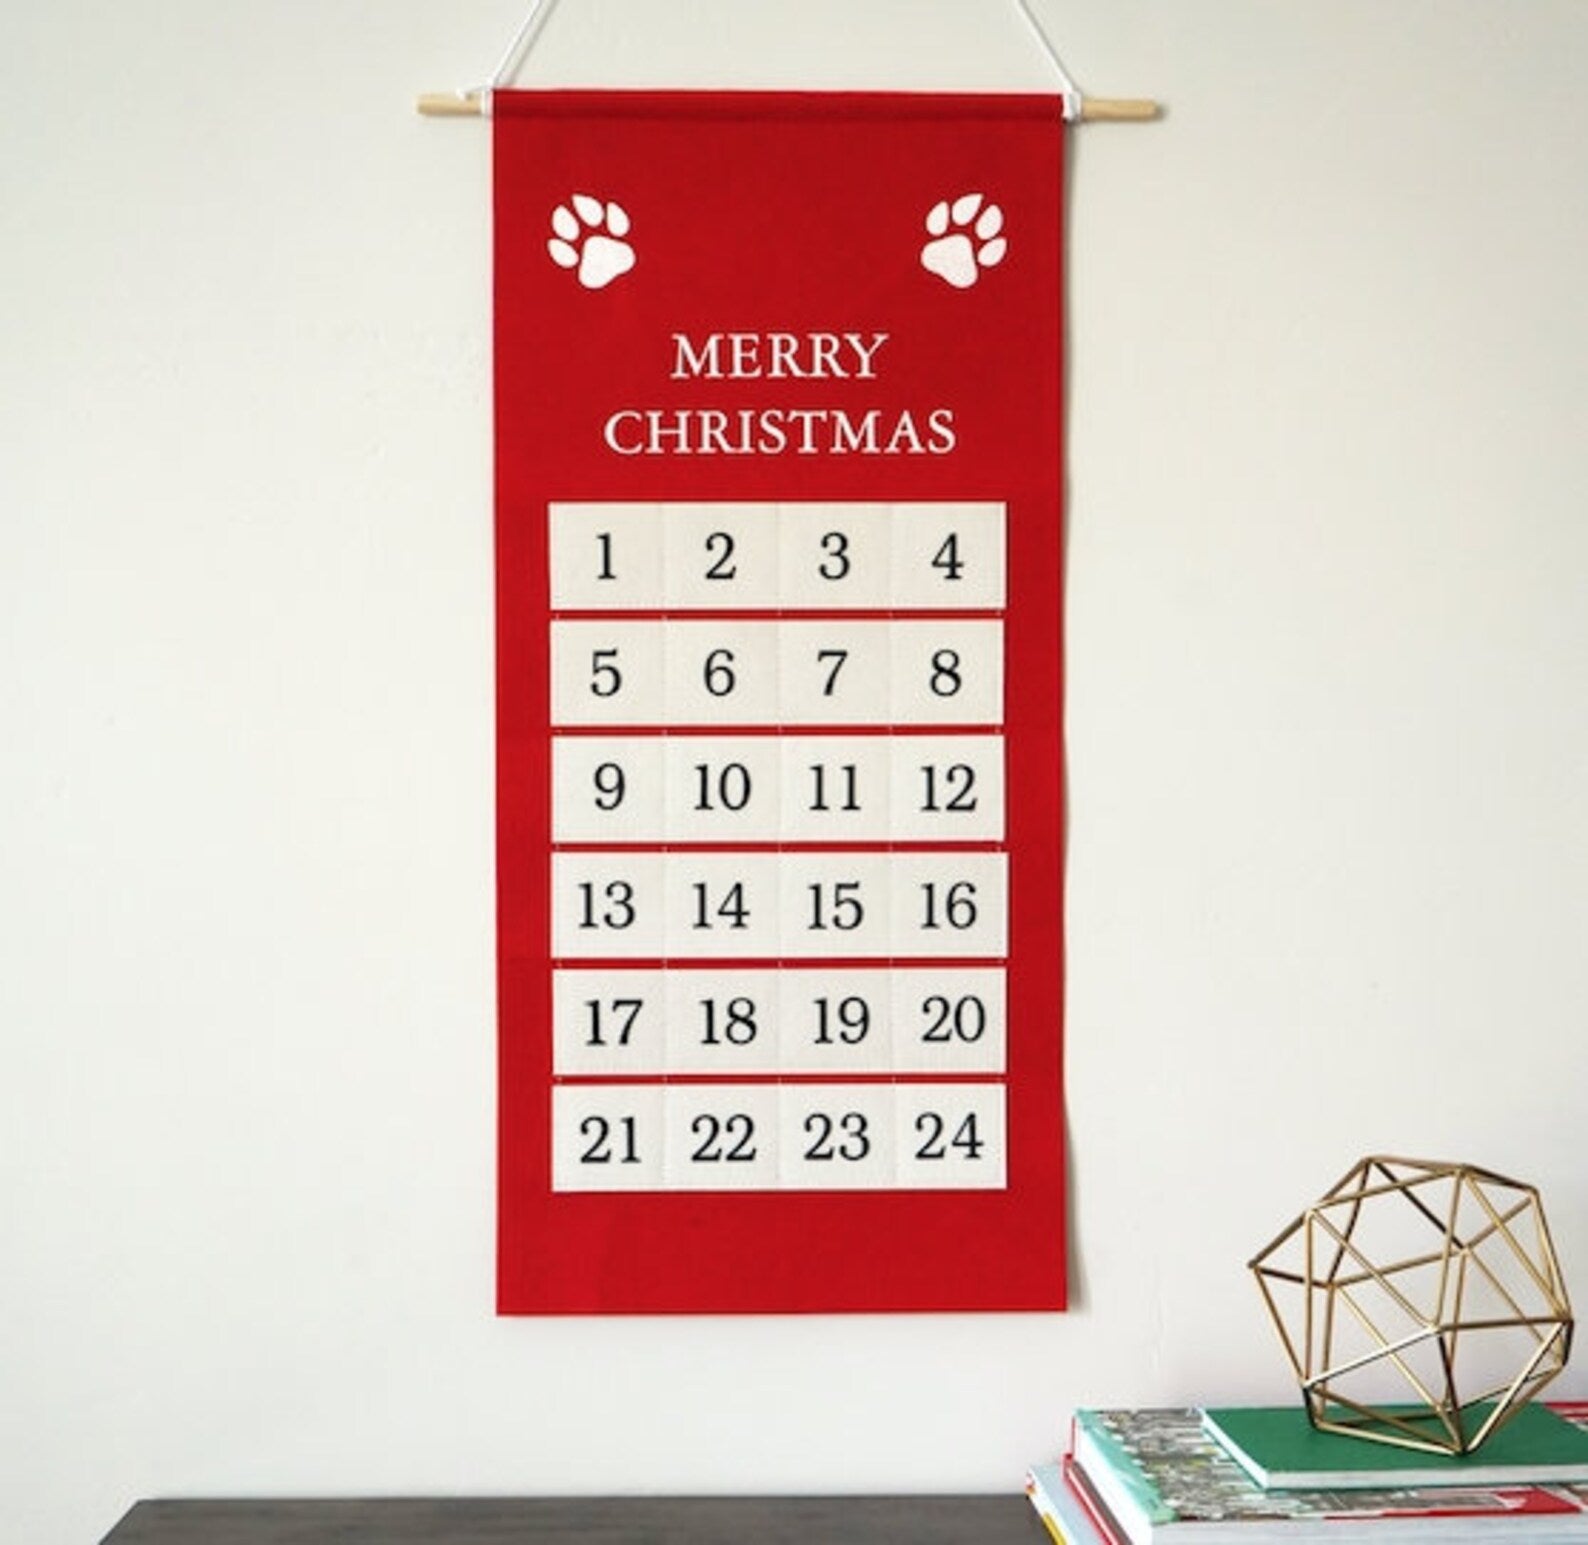 Pet Advent Calendars - 4 Colors - Second East LLC